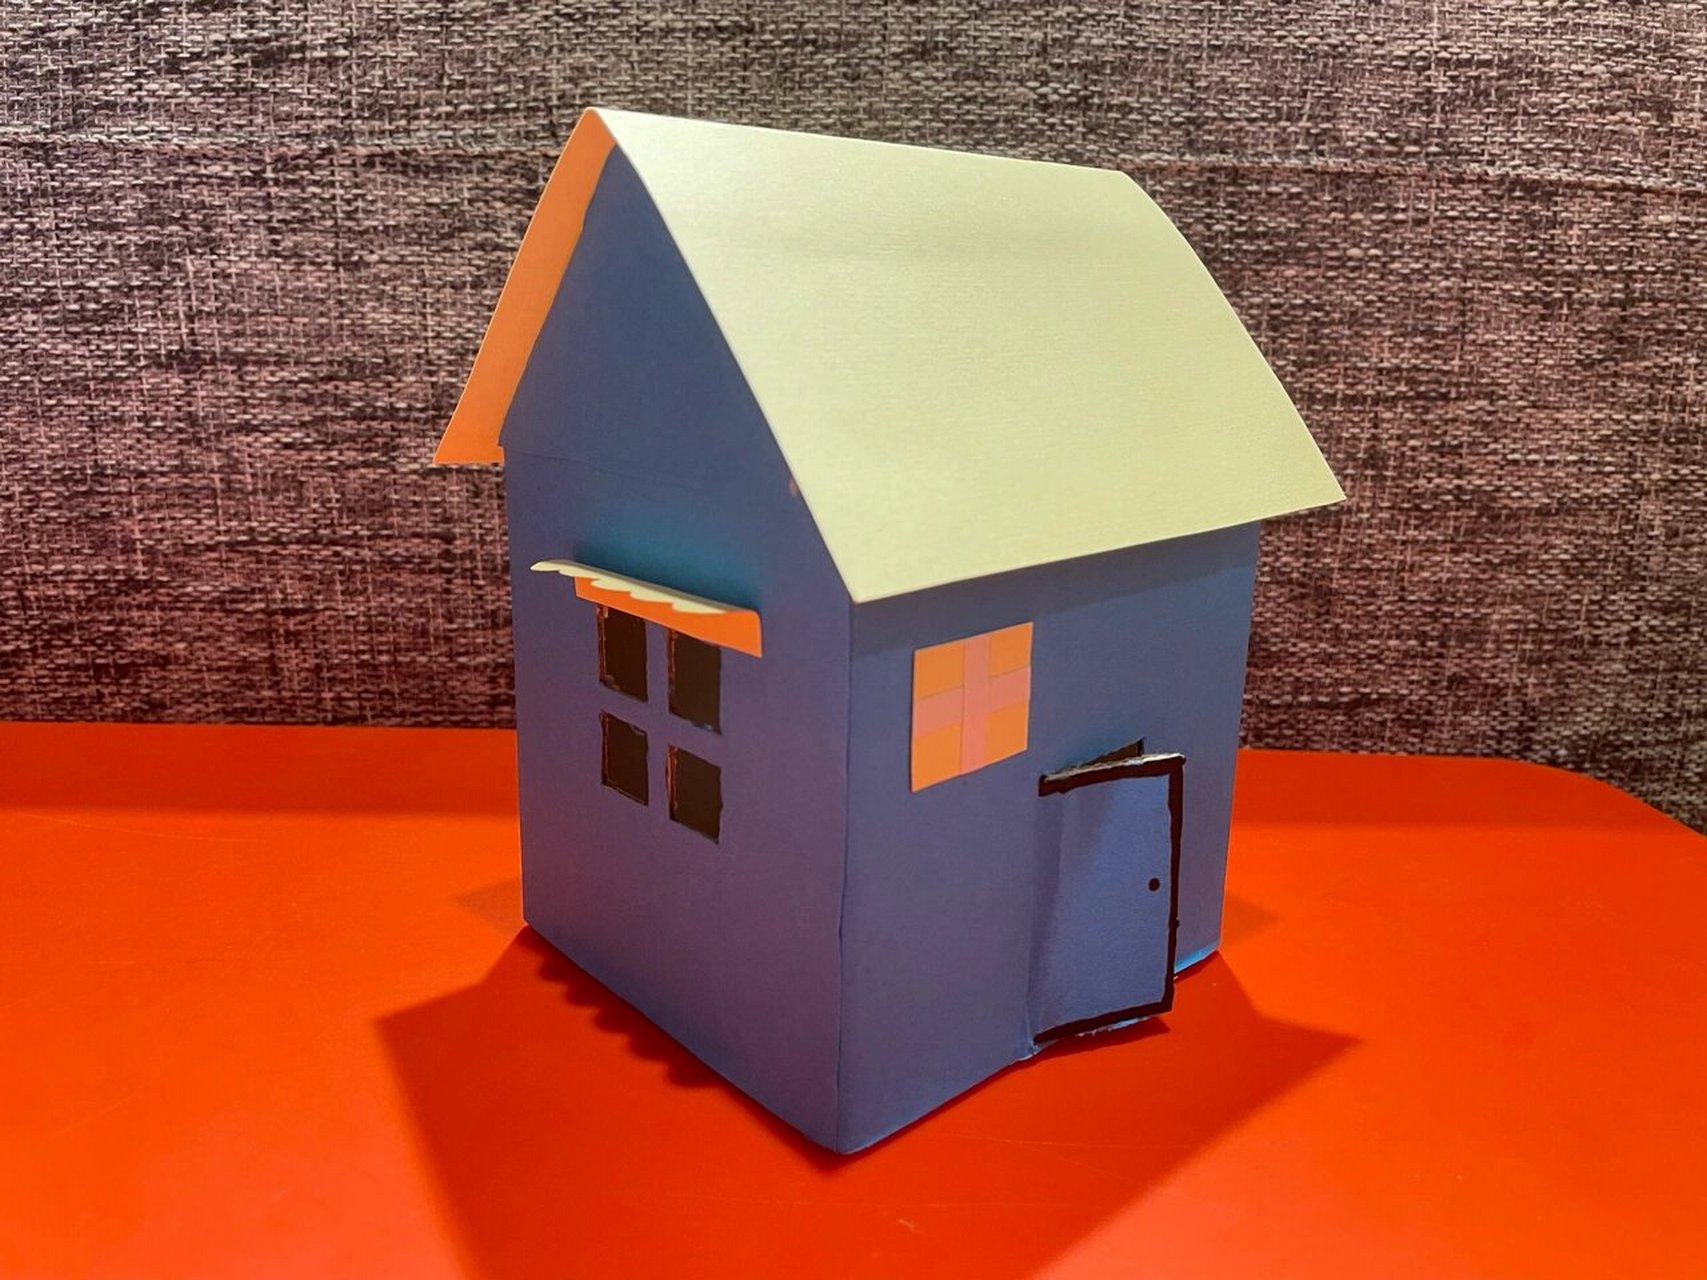 幼儿园手工作业—纸盒房子 幼儿园布置的亲子作业,用废旧纸盒做房子